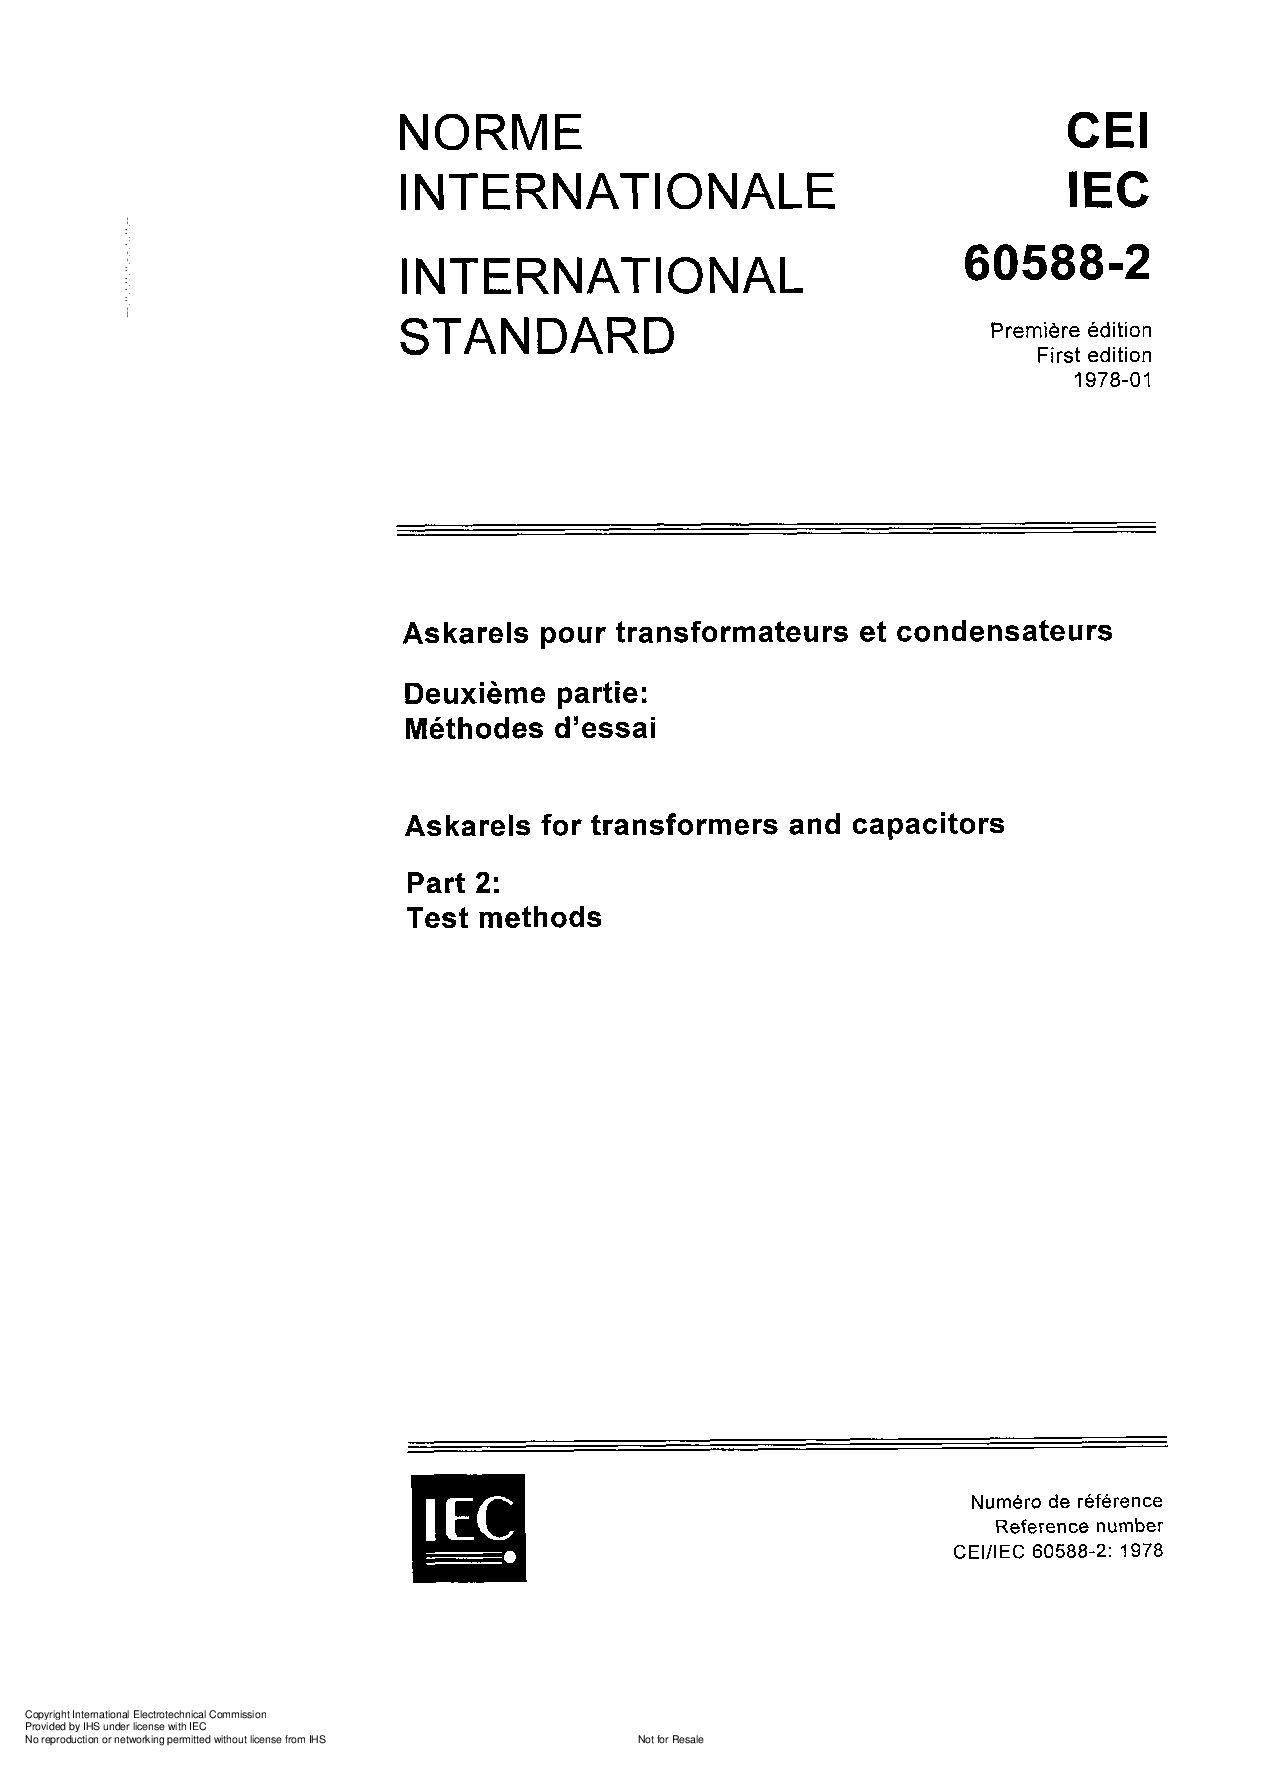 IEC 60588-2:1978封面图